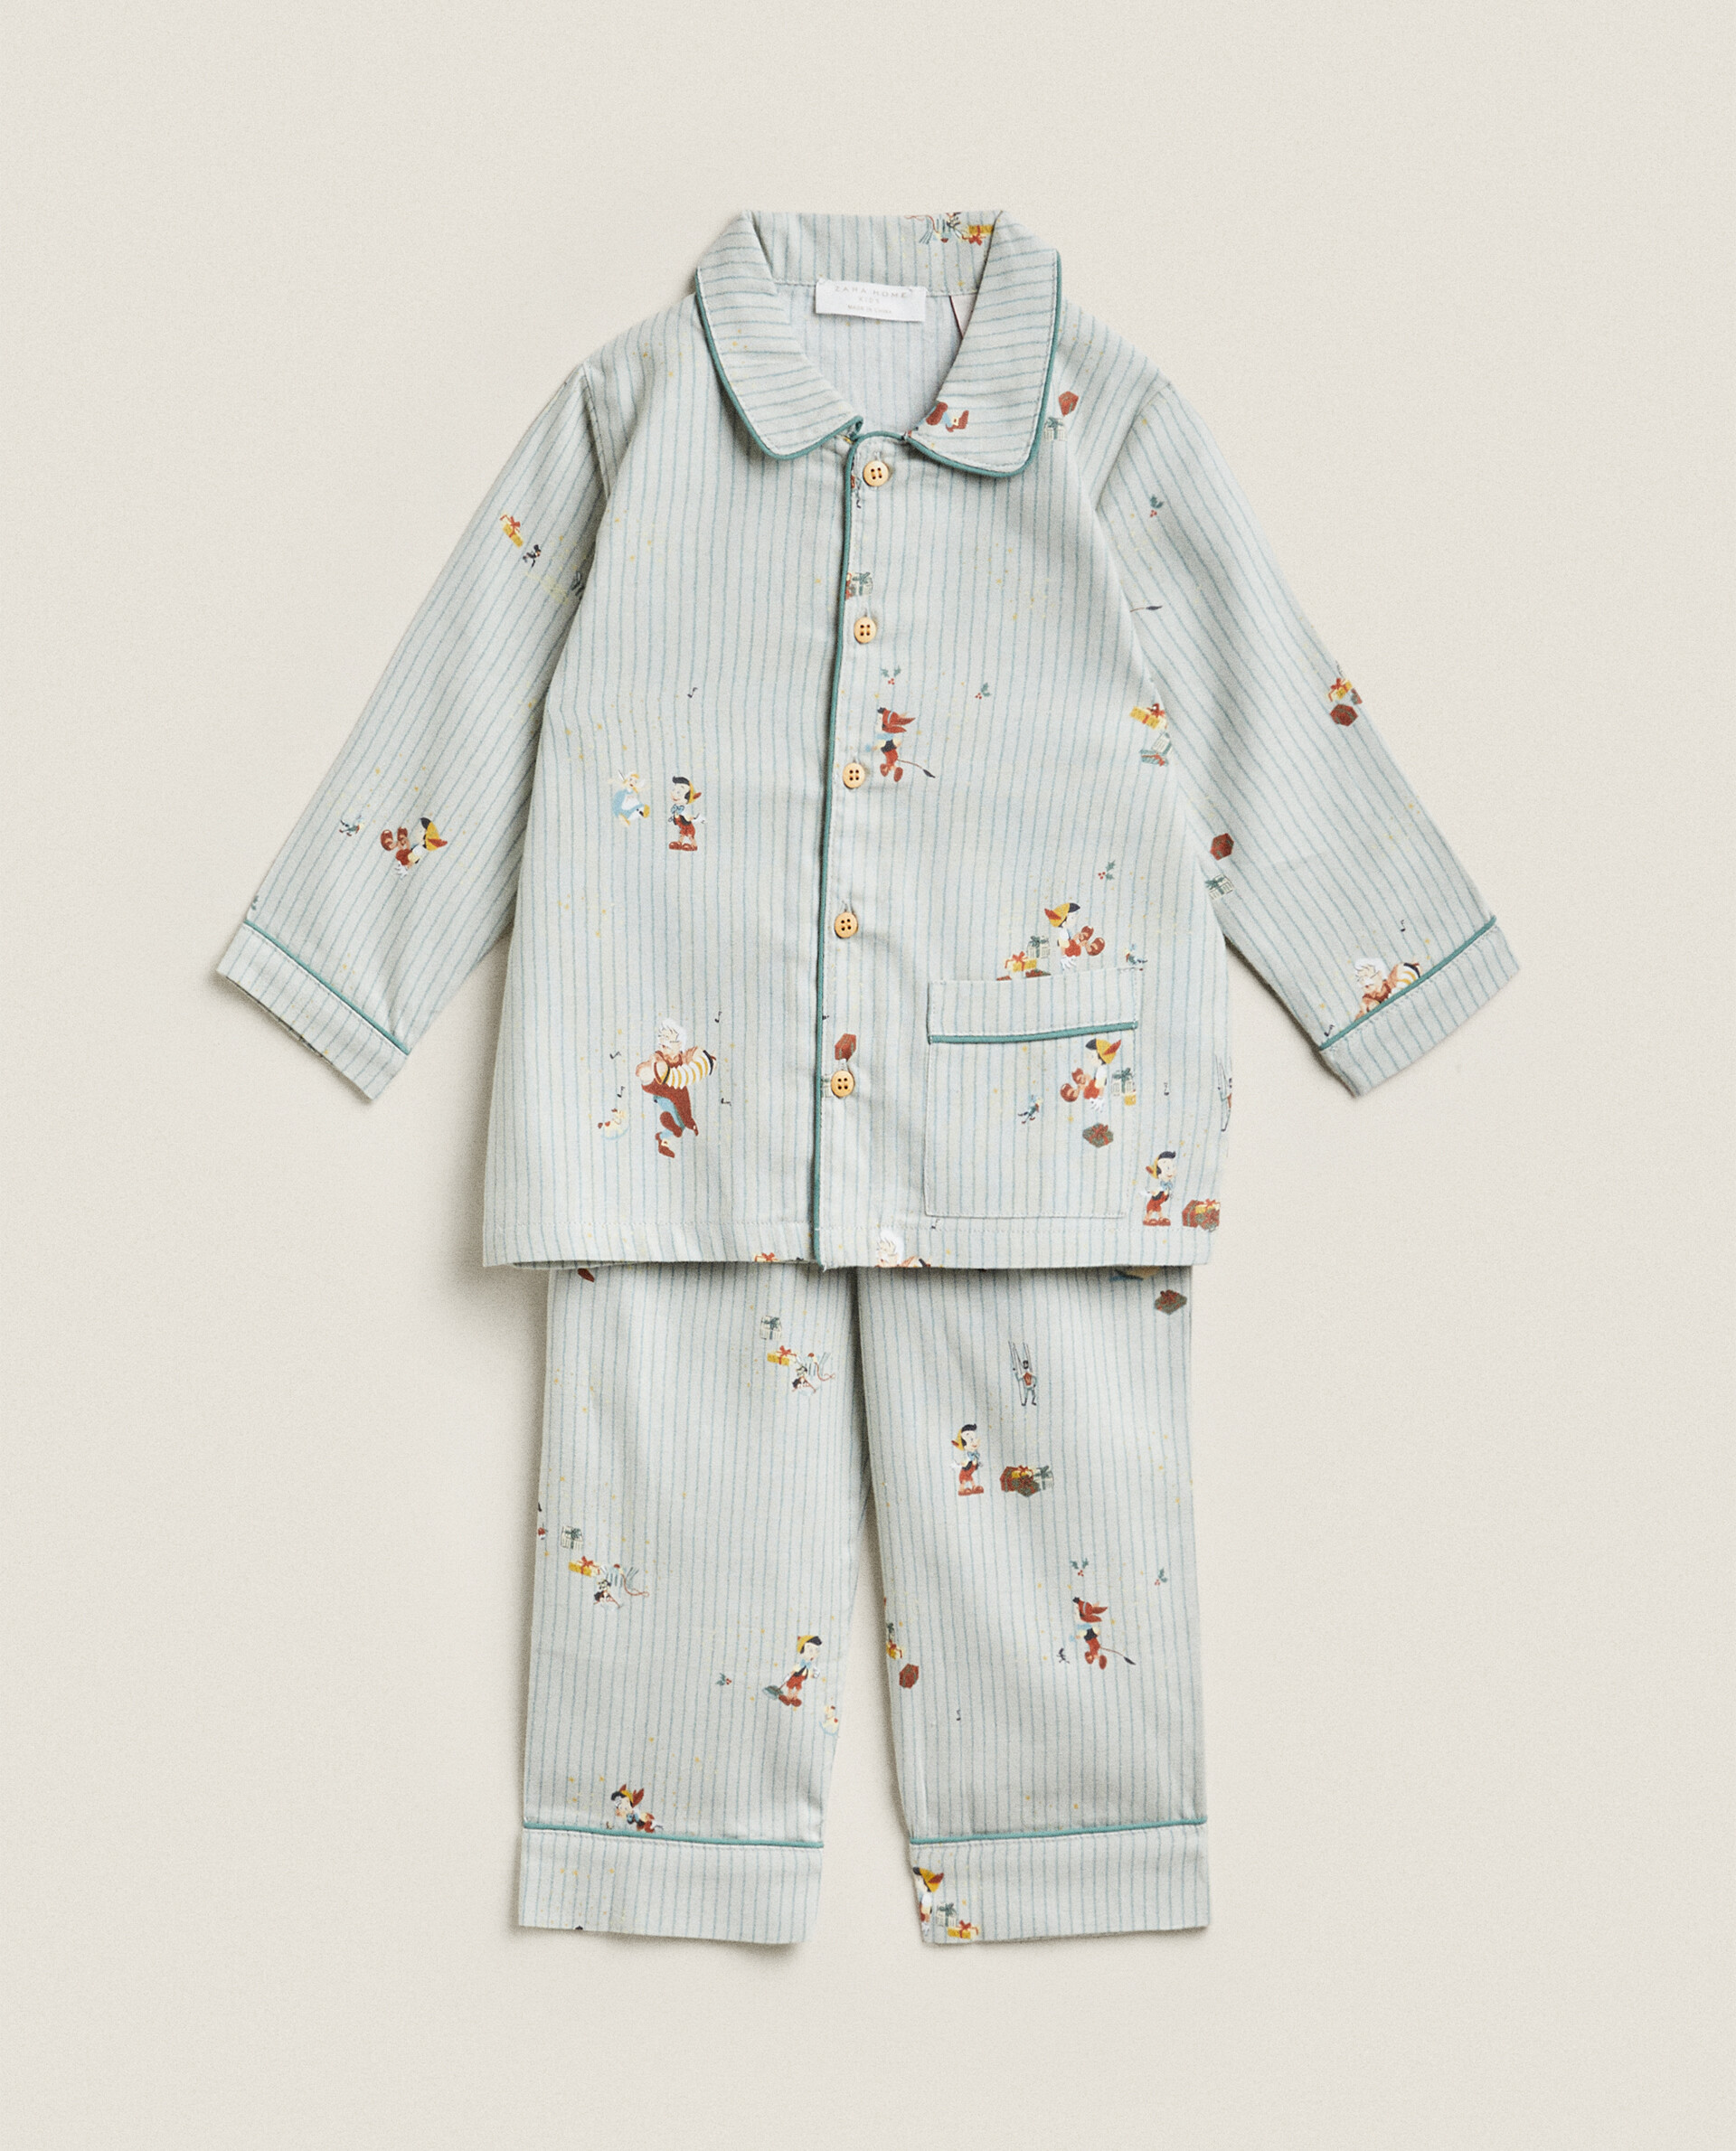 Camisa de pijama con motivo Monograma mixto - Mujer - Ready to